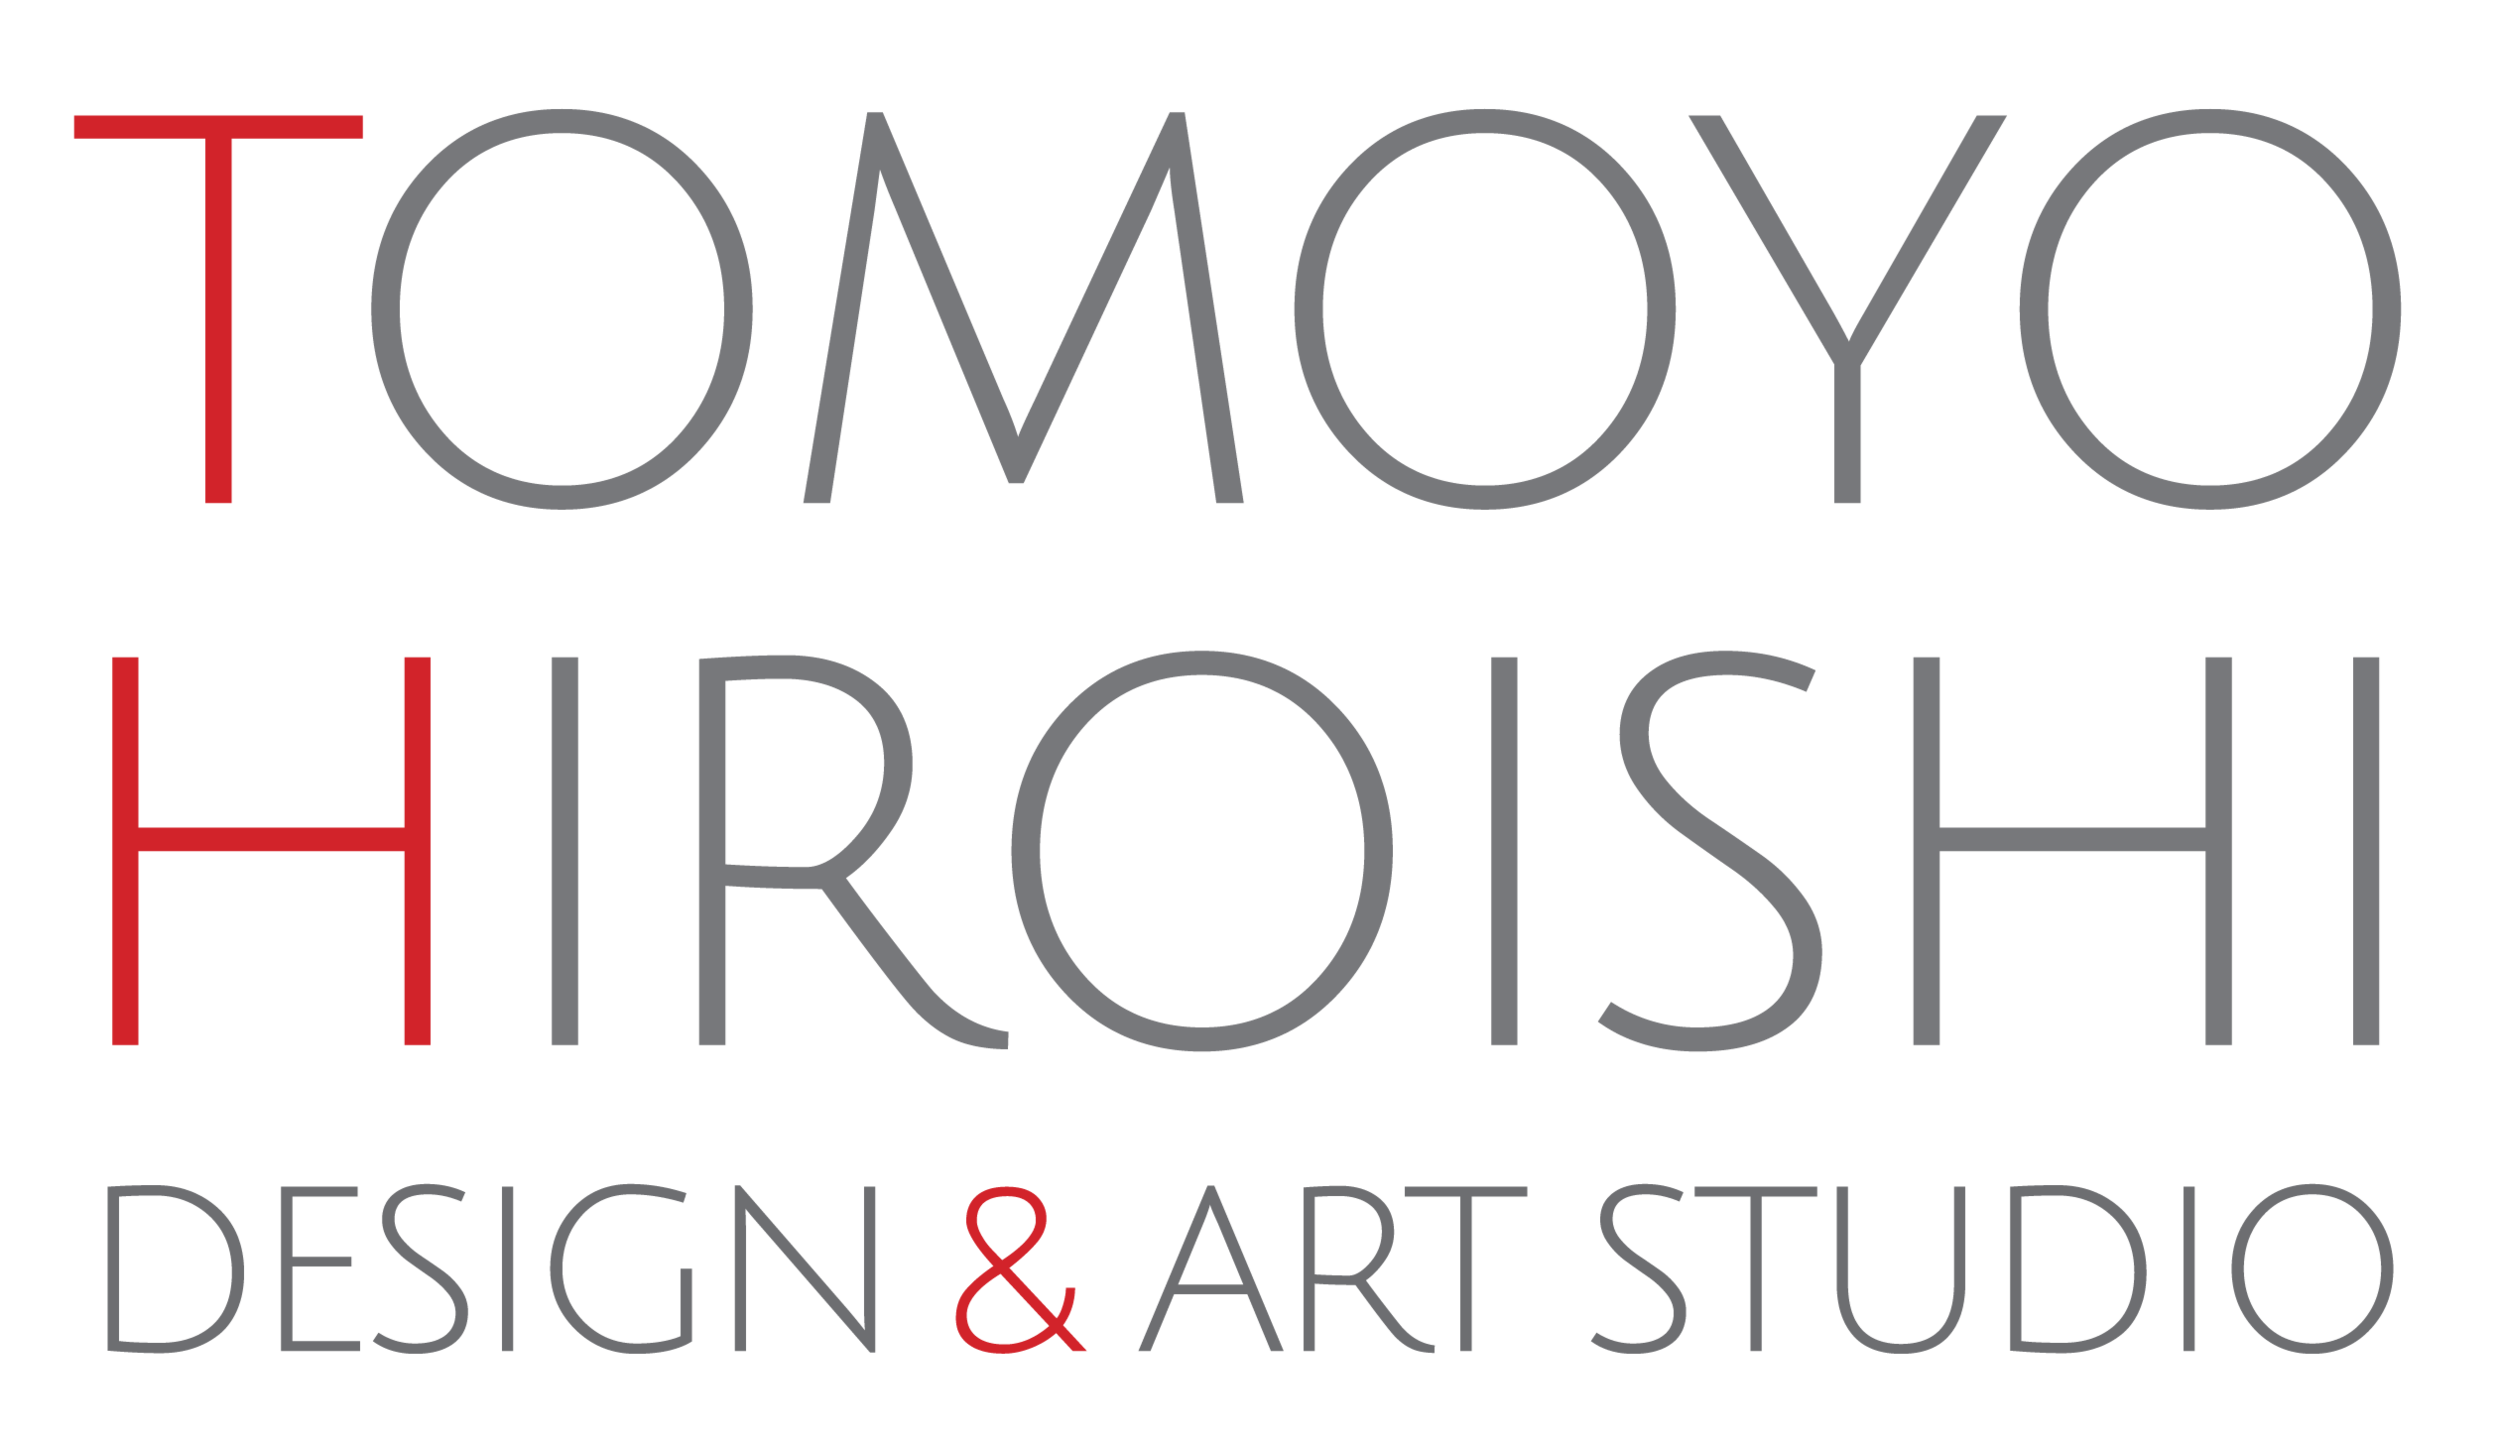 Tomoyo Hiroishi Design &amp; Art Studio 